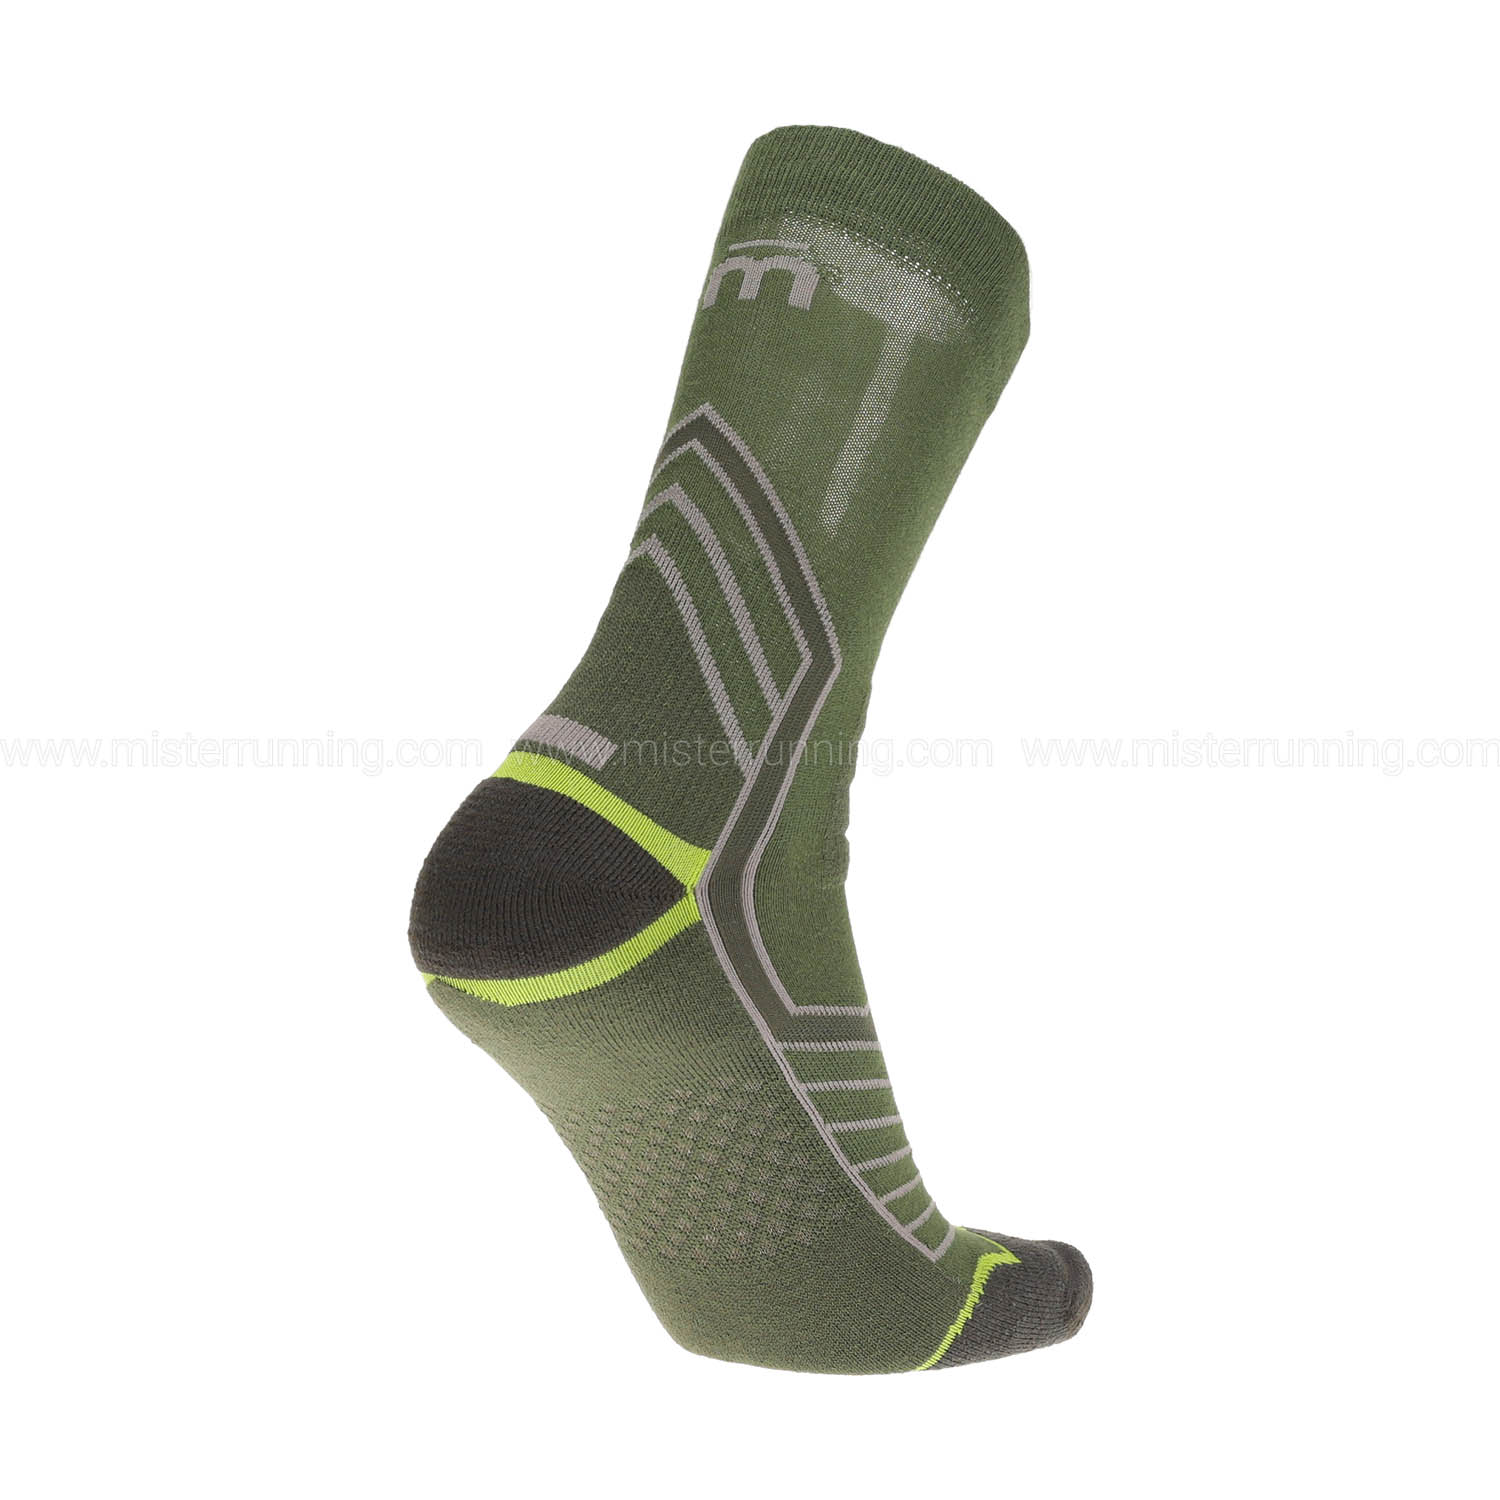 Mico X-Static Odor Zero Socks - Verde